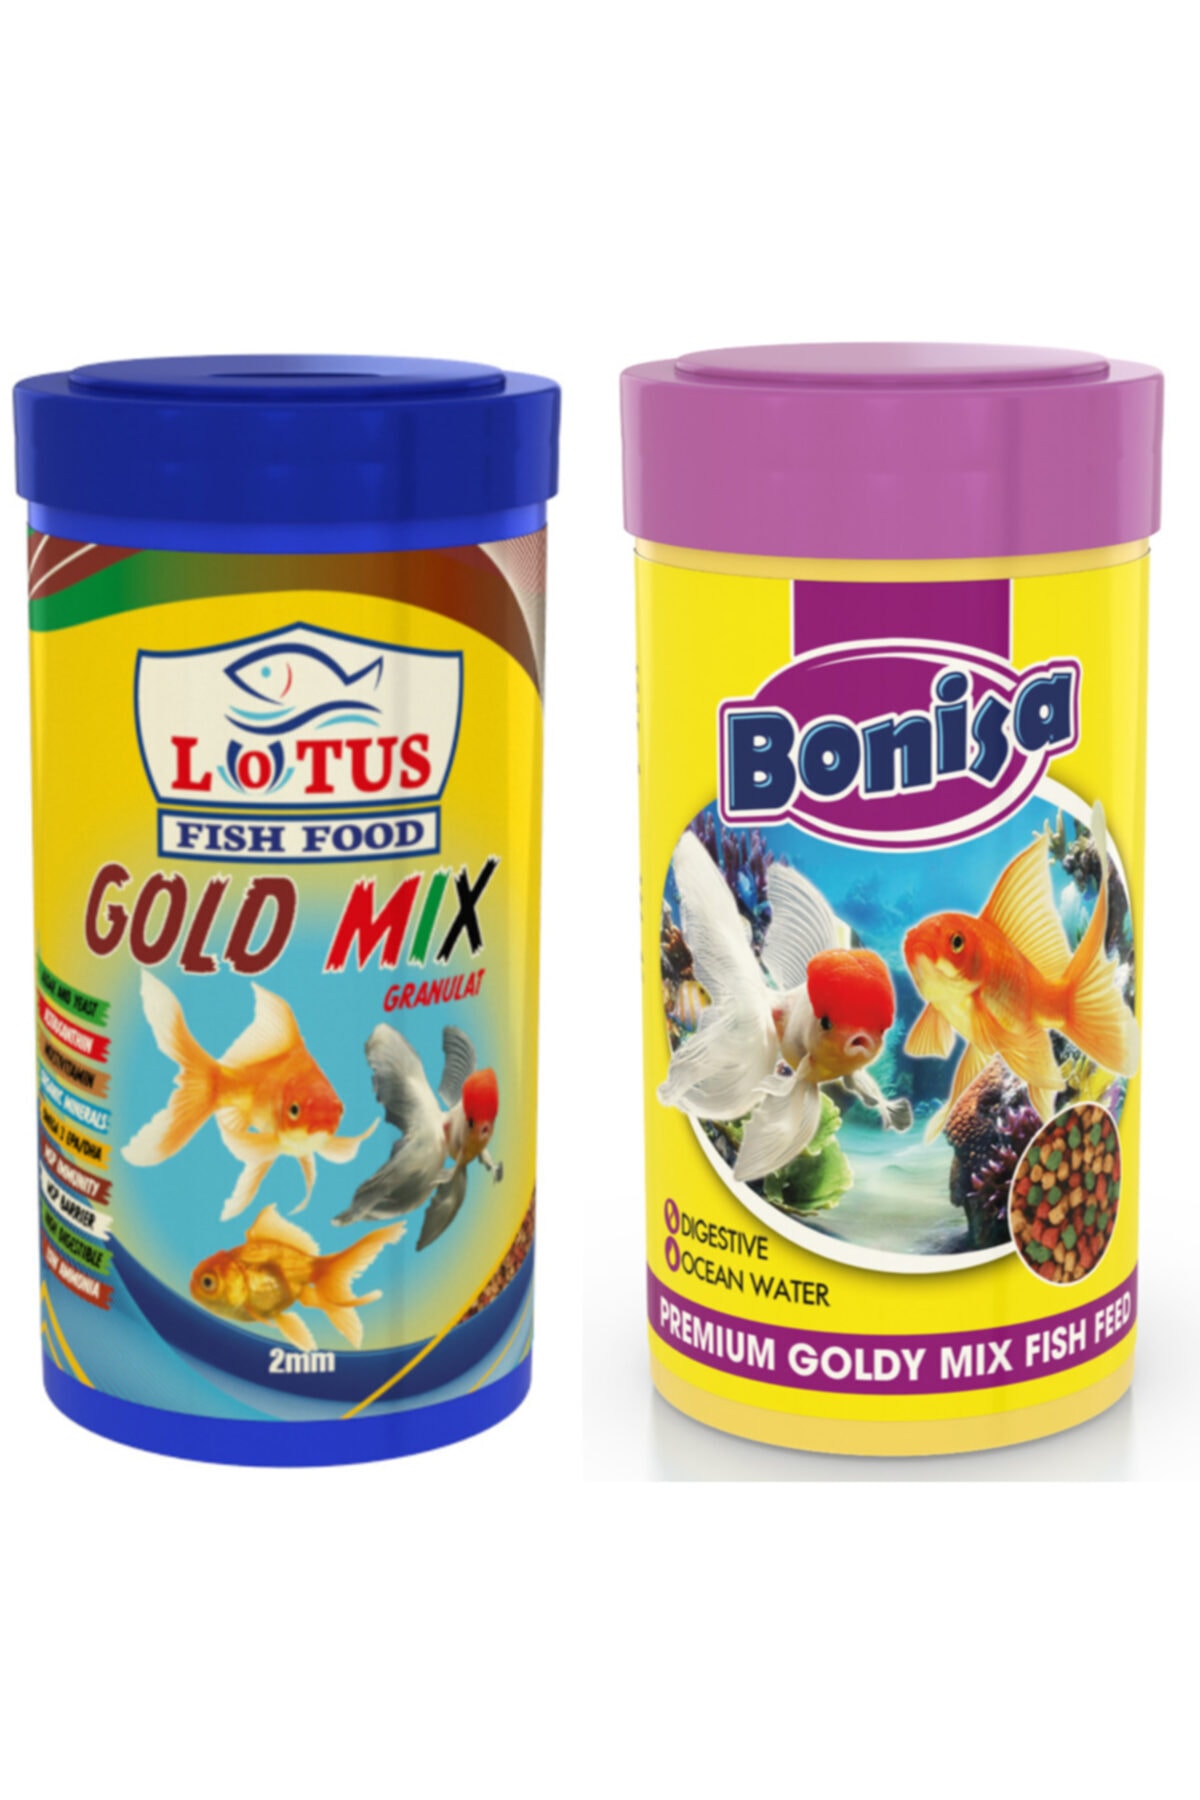 Lotus Gold Mix Granulat 250 Ml Ve Bonisa Goldy Mix 250 Ml Japon Balığı Yemi